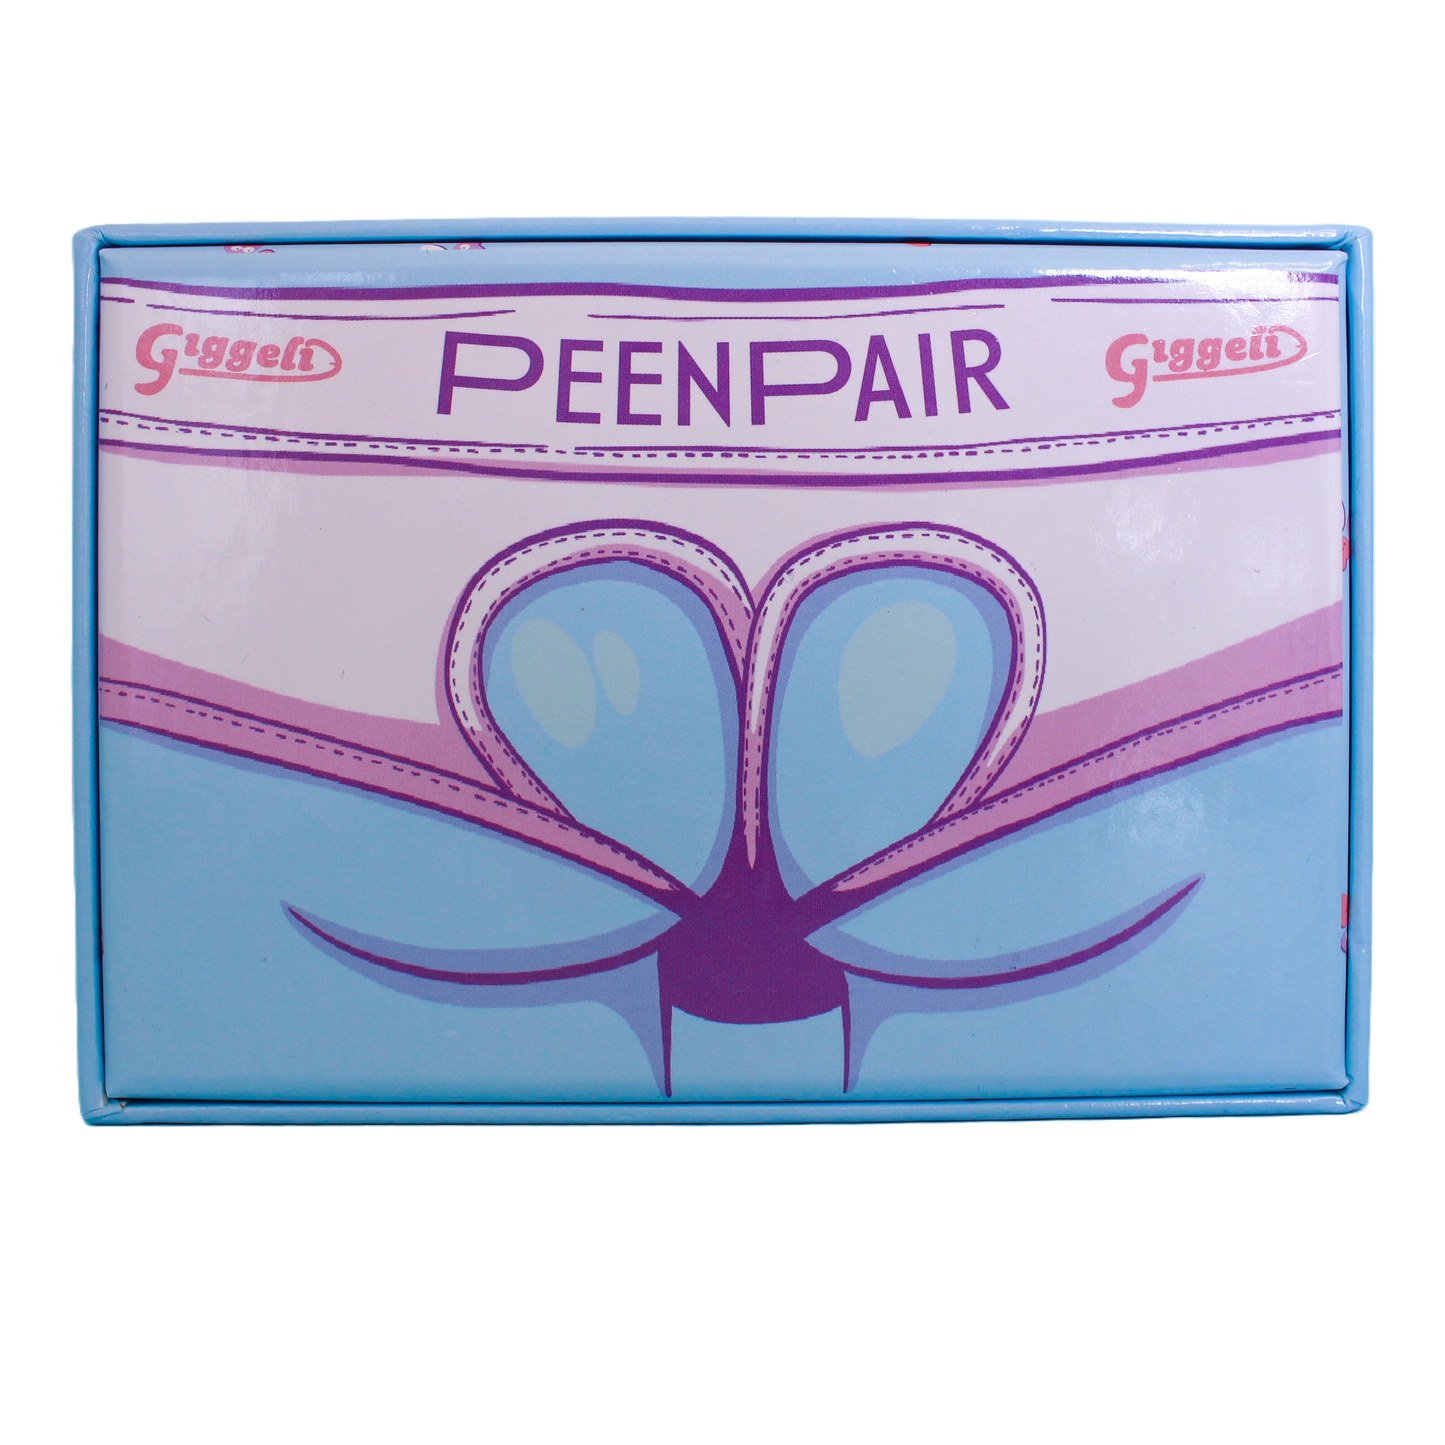 PeenPair memory game